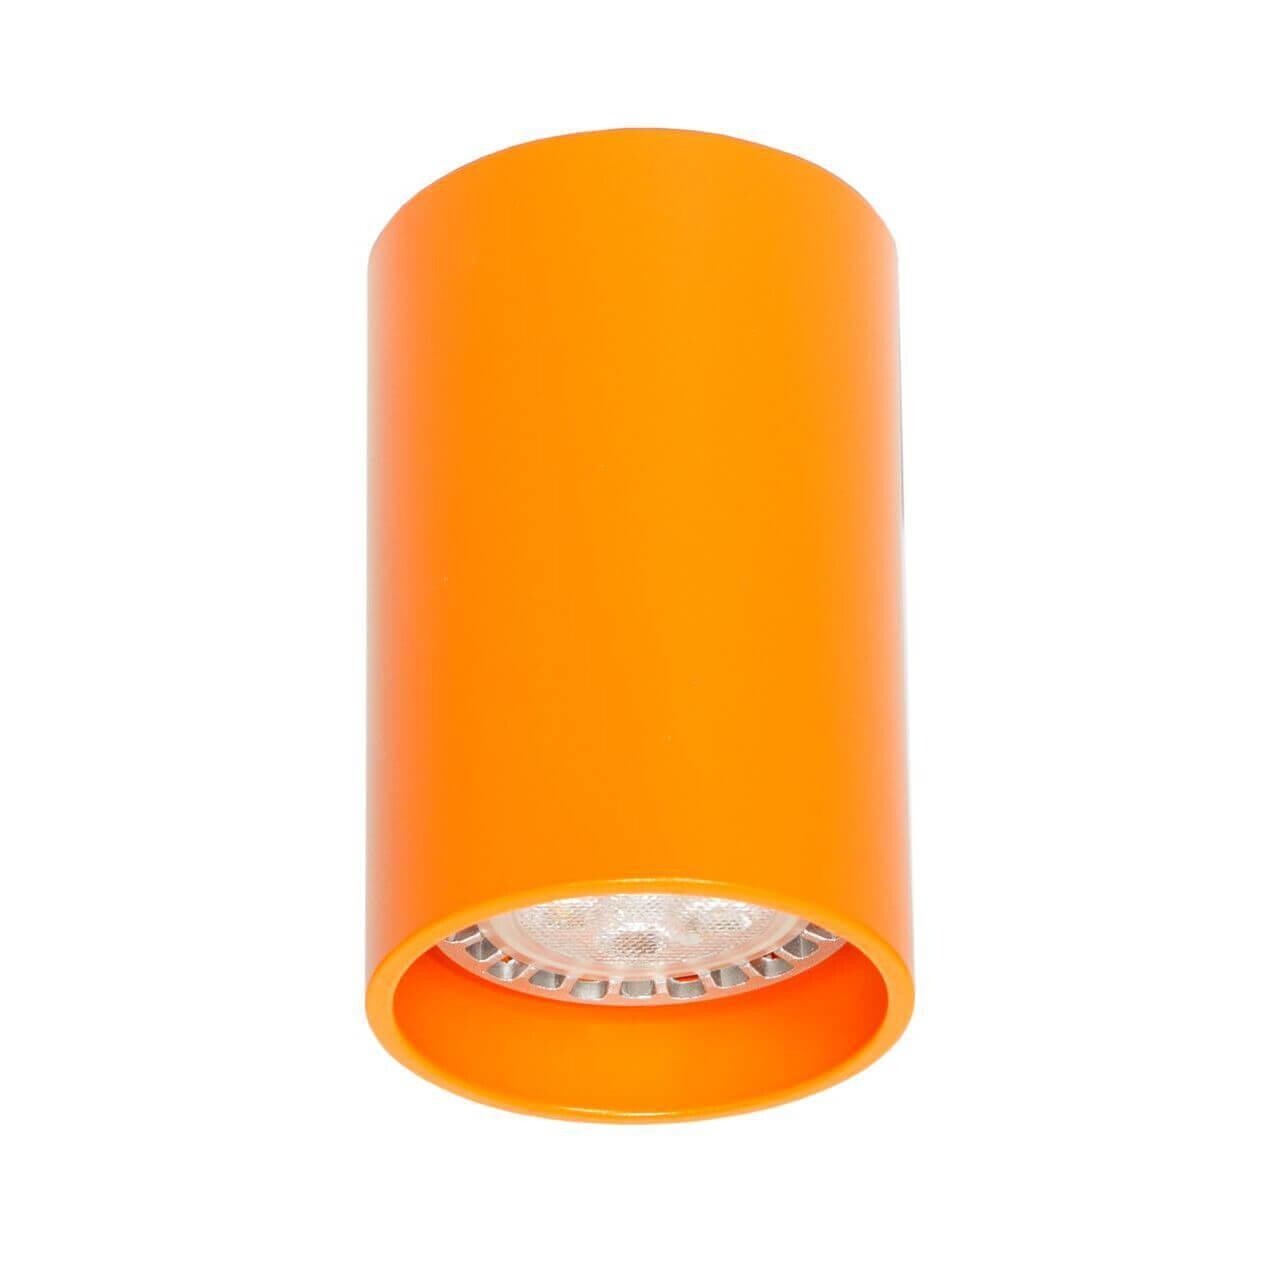 Оранжевые точечные потолочные светильники -  точечный потолочный .